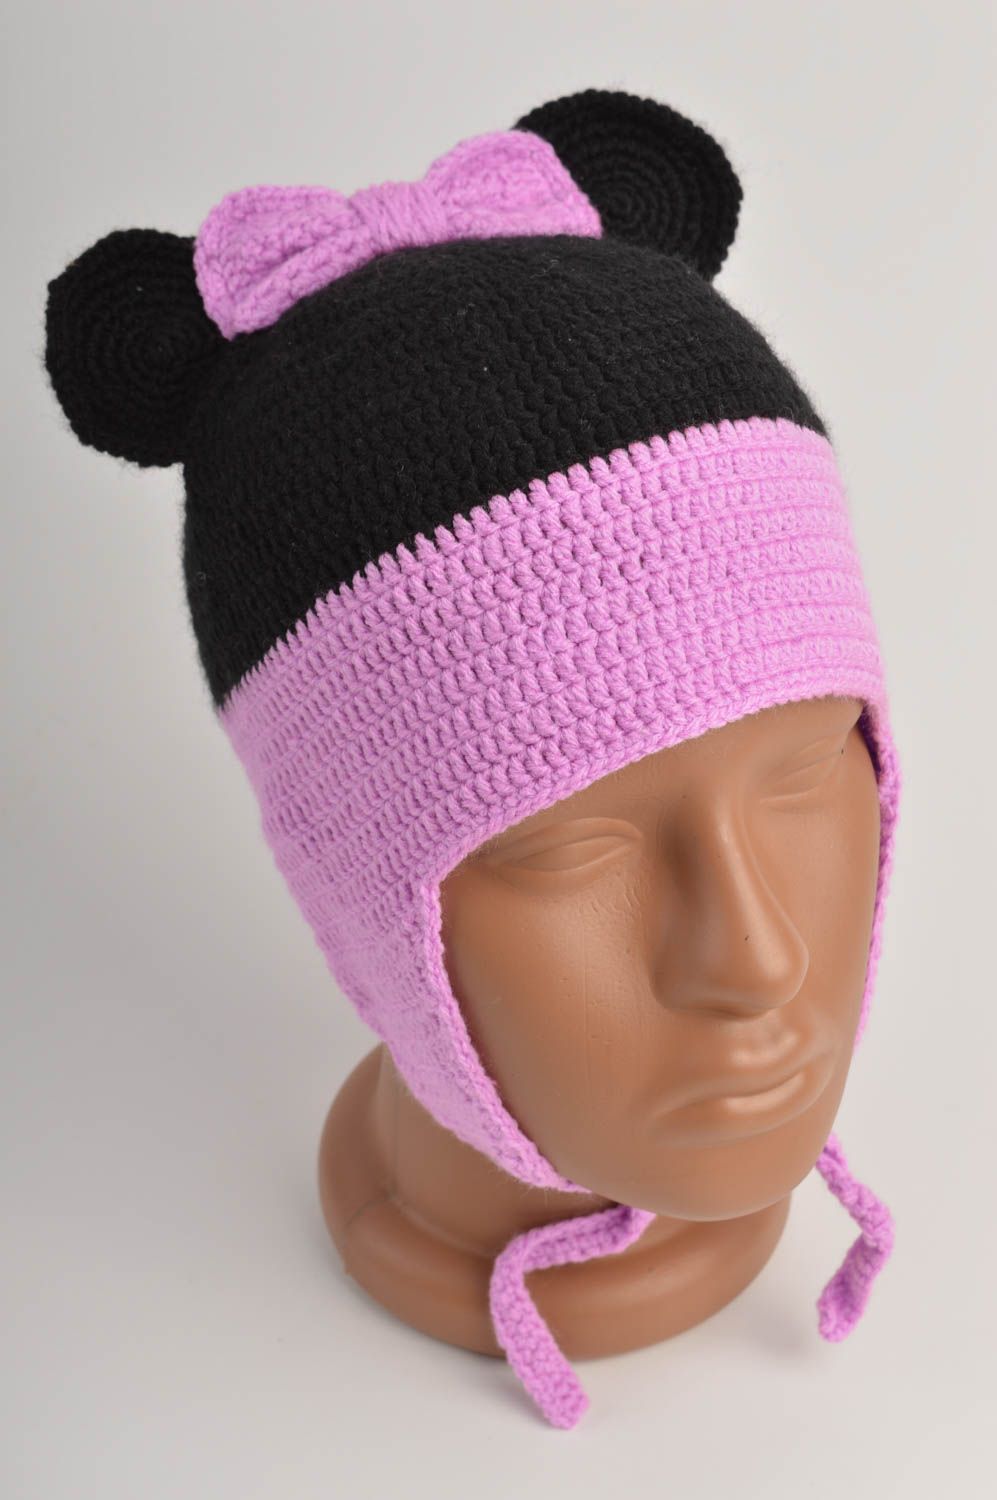 Handmade warm baby hat crochet hat designs winter head accessories ideas photo 2